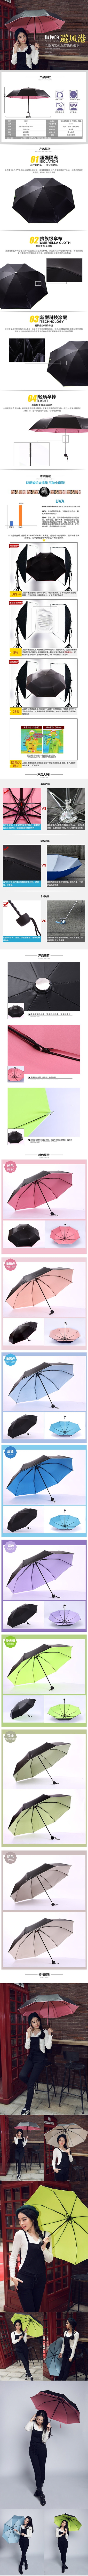 雨伞描述设计 电商设计 淘宝 天猫 京东 商业摄影 淘宝美工